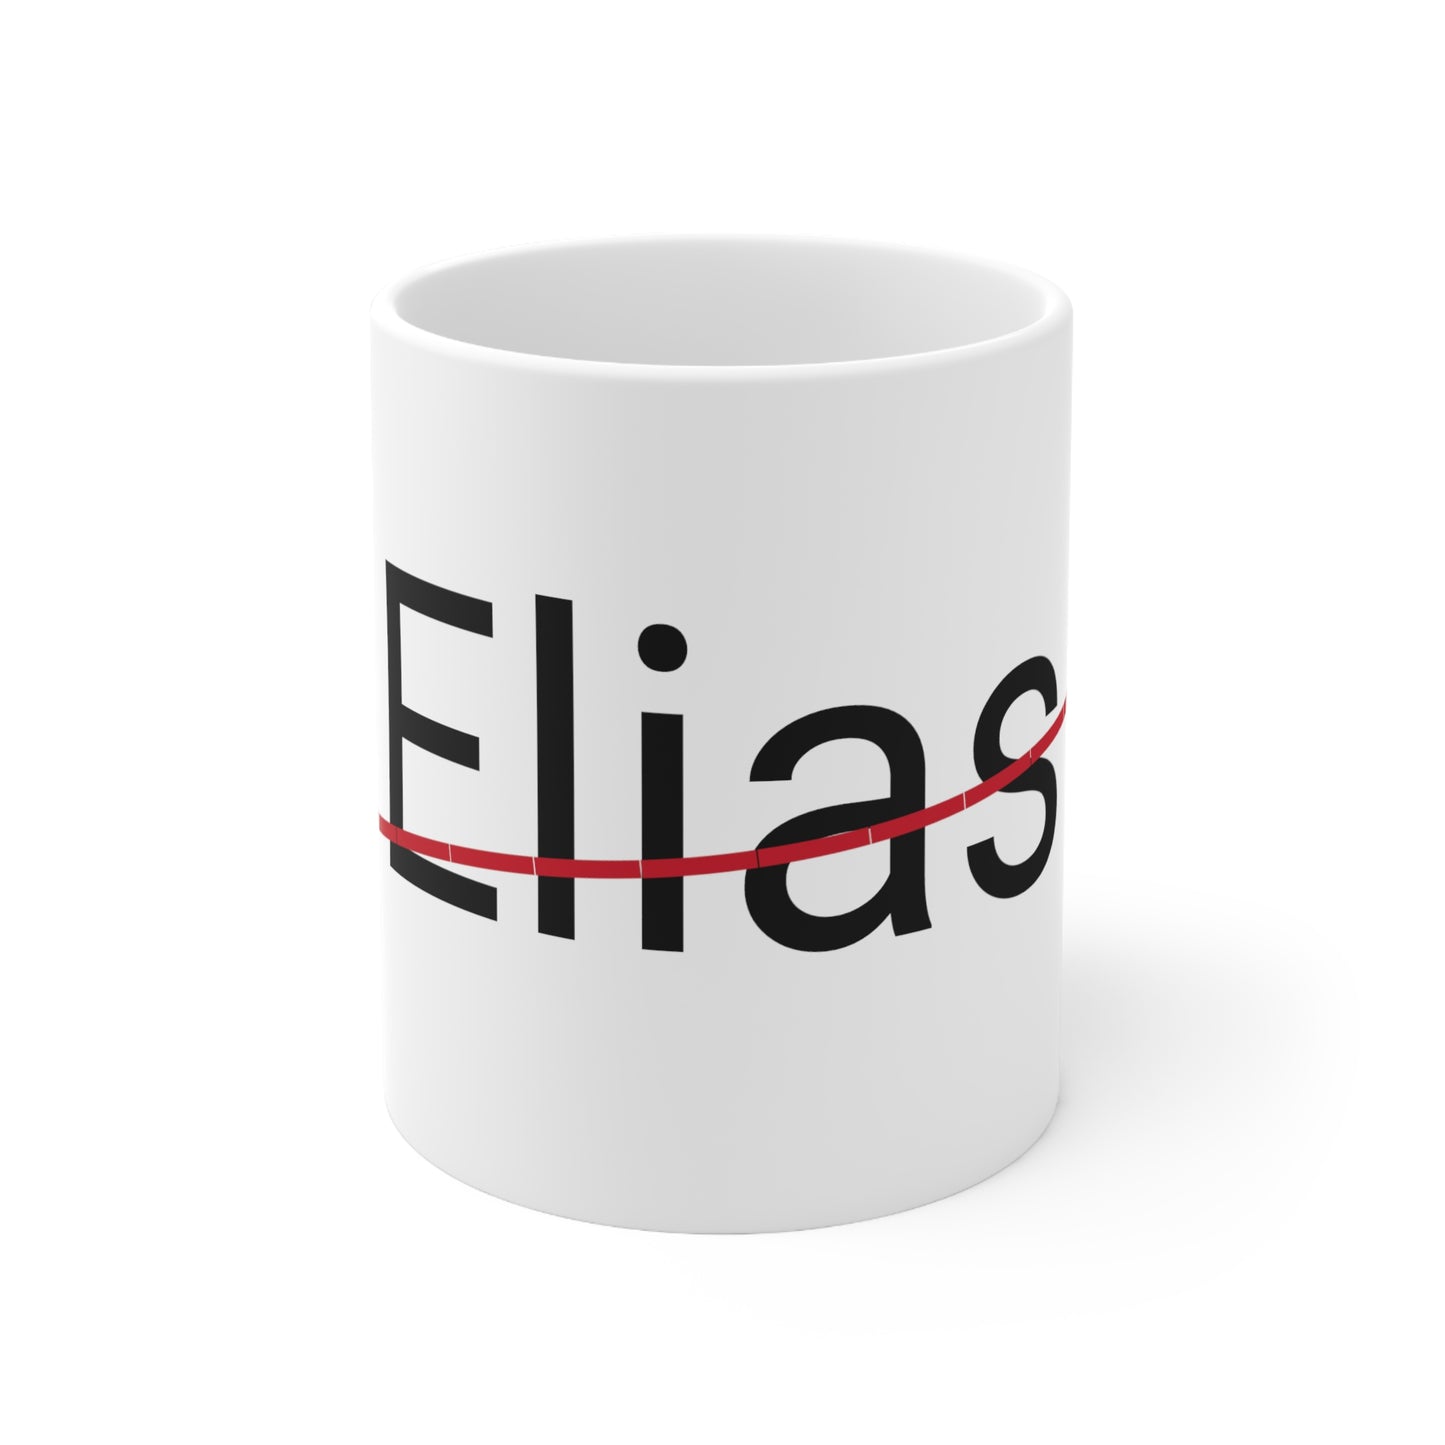 Elias not my name coffee Mug 11oz